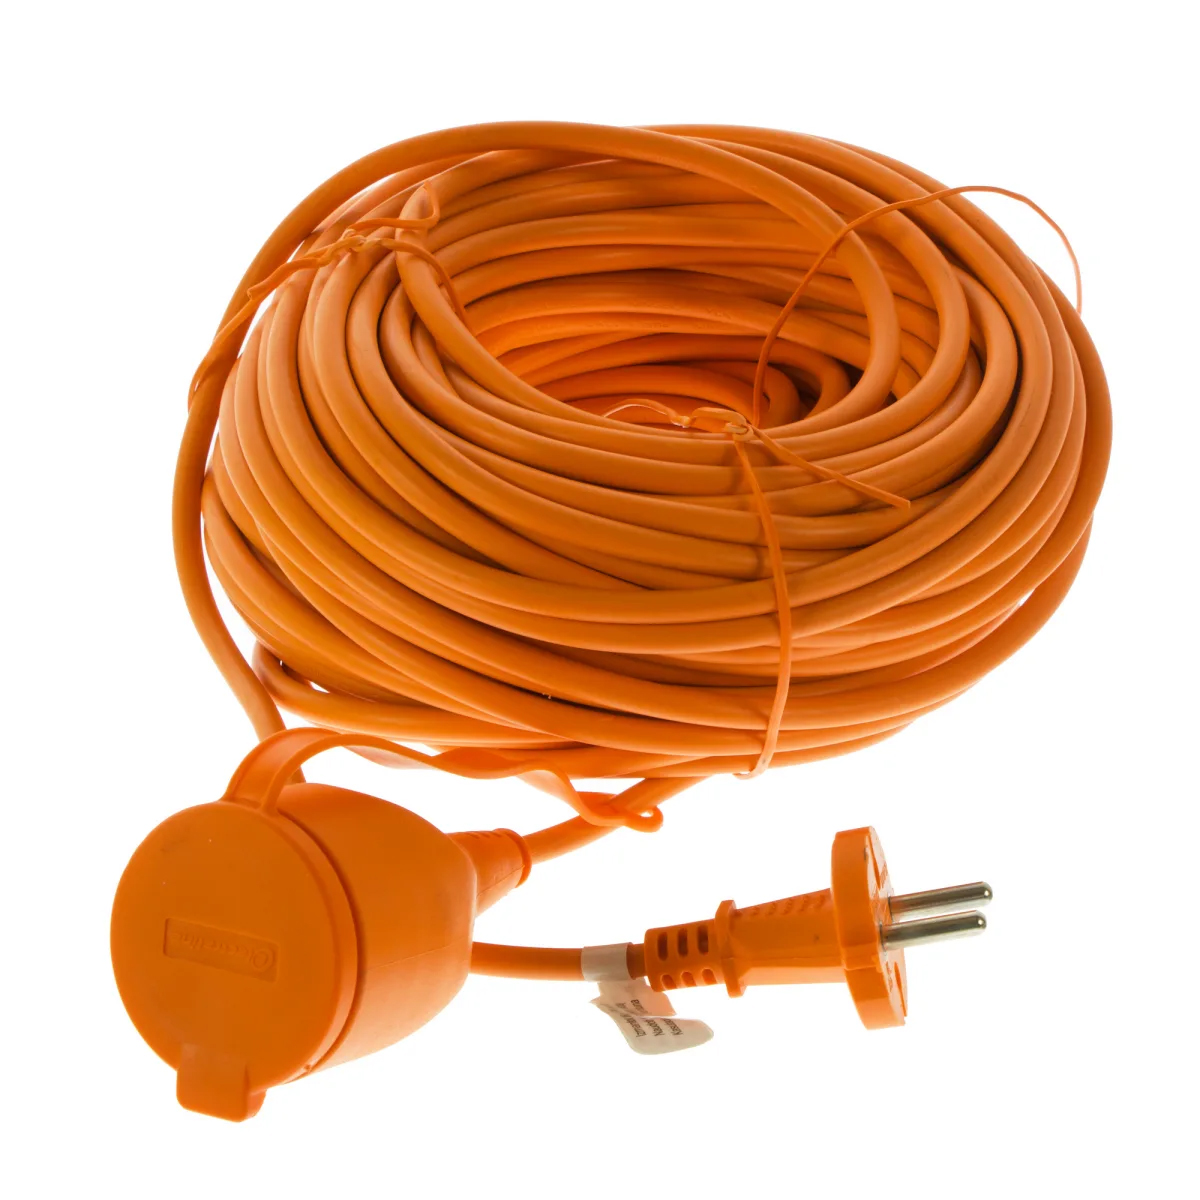 удлинитель шнур electraline electralock 1 розетка с заземлением 3x1 5 мм 20 м 3580 вт оранжевый Удлинитель шнур Electraline 1 розетка цвет оранжевый 2х0,75 10 м